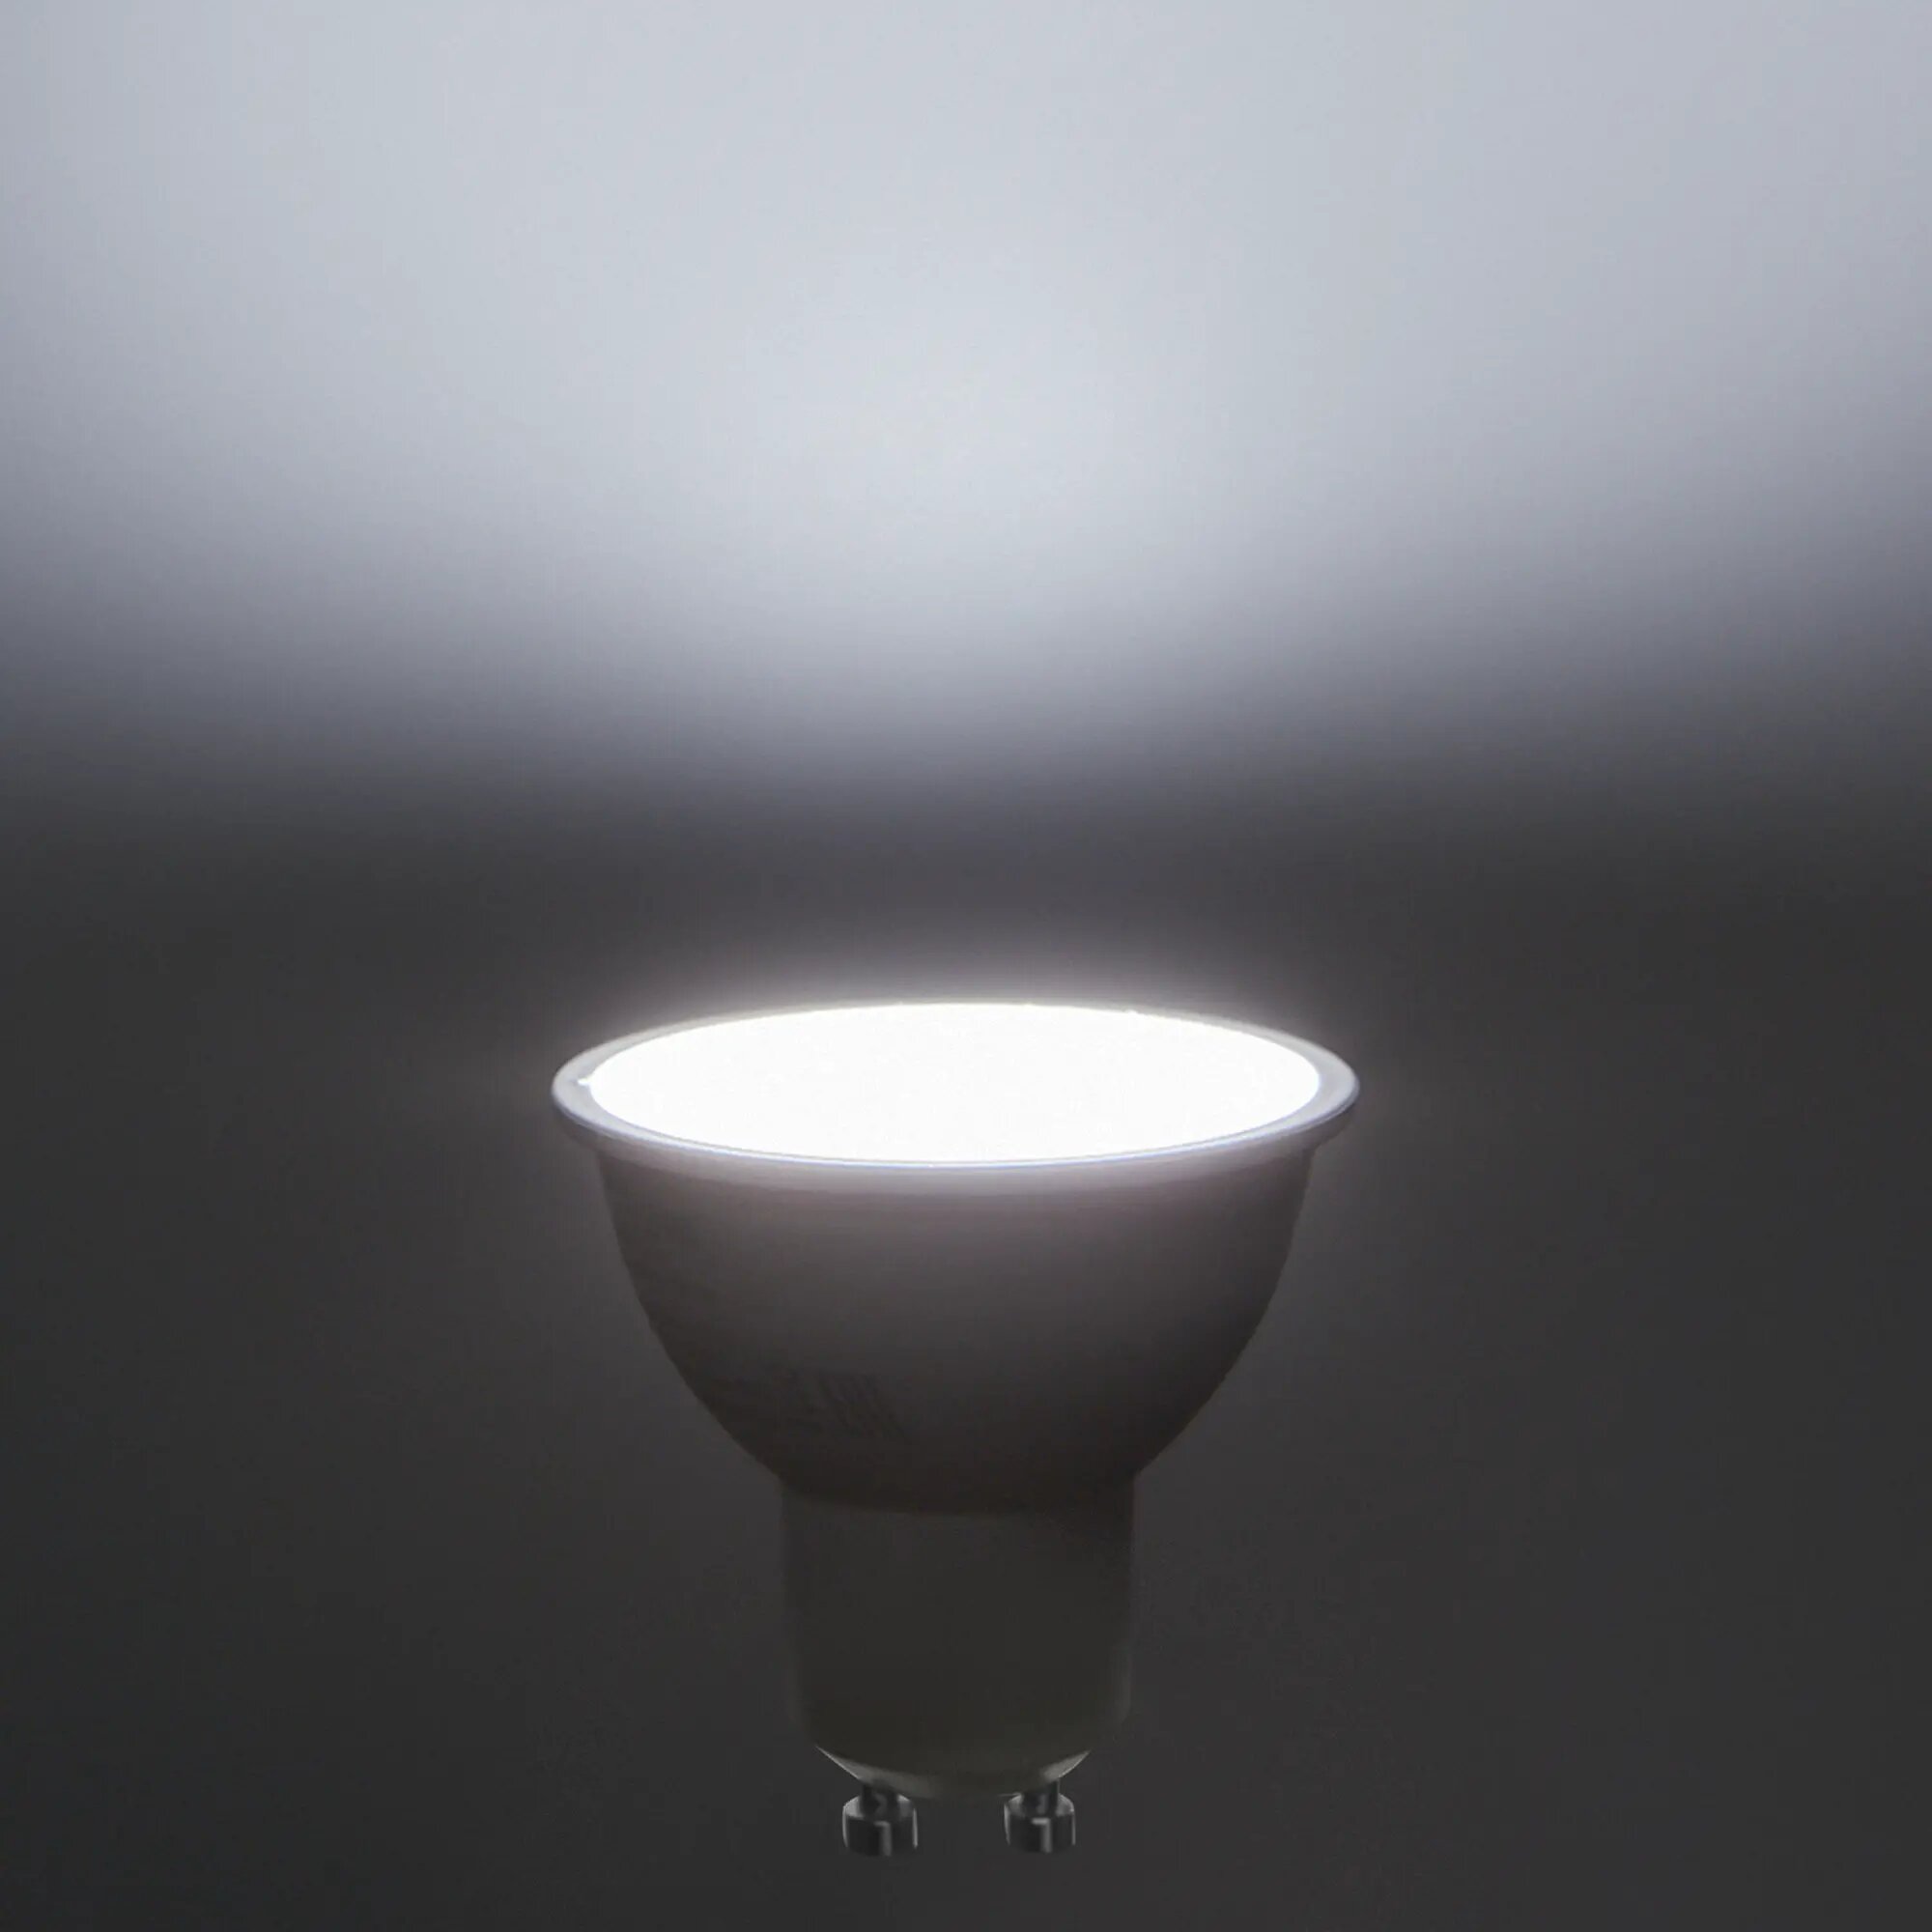 Лампа светодиодная Эра GU10 170-265 В 8 Вт софит 640 лм нейтрально белый цвет света